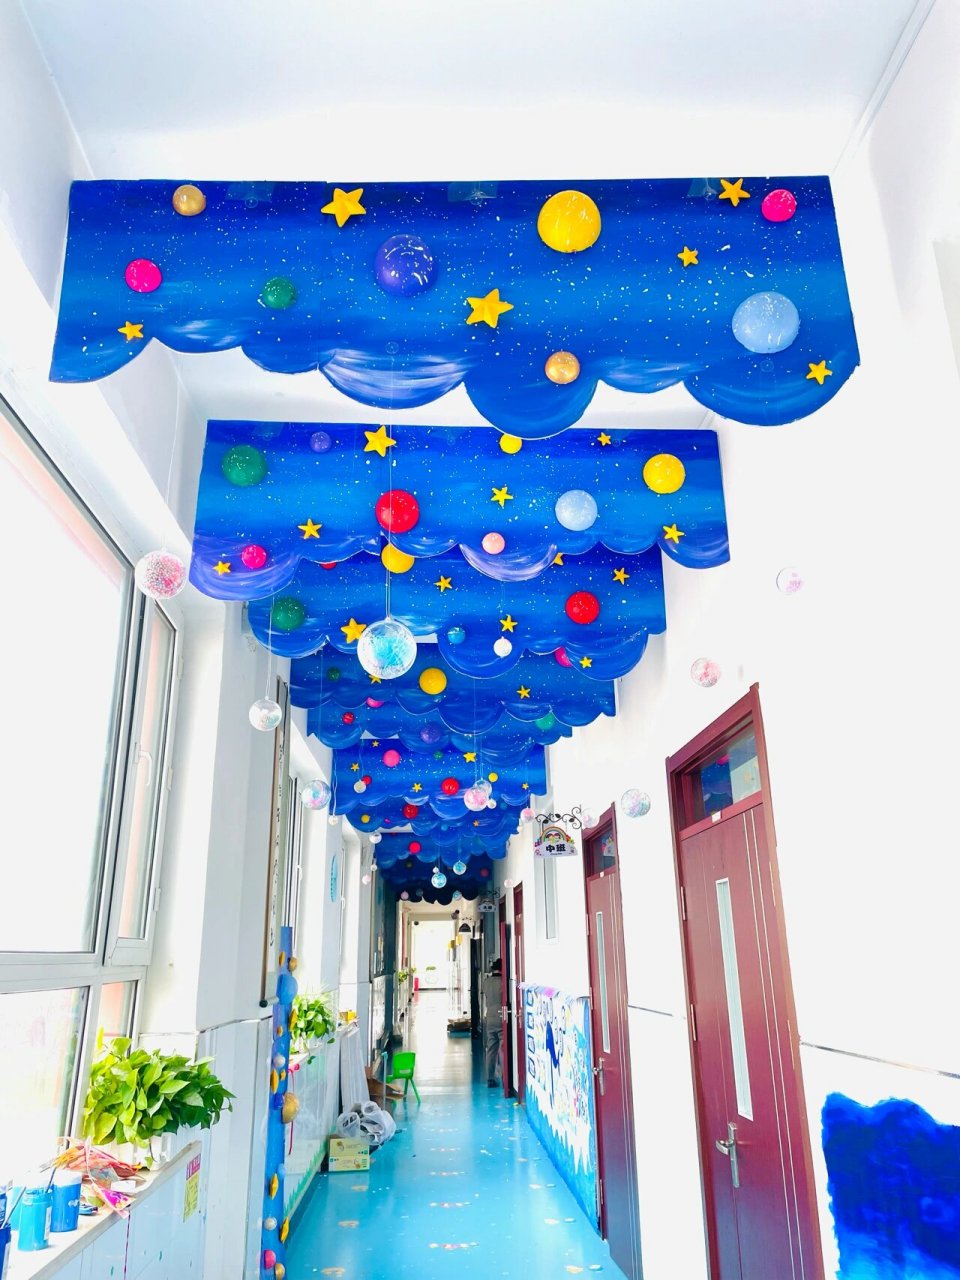 幼儿园走廊星空环创 在看到的 自己也给幼儿园做了一下 做好效果特别